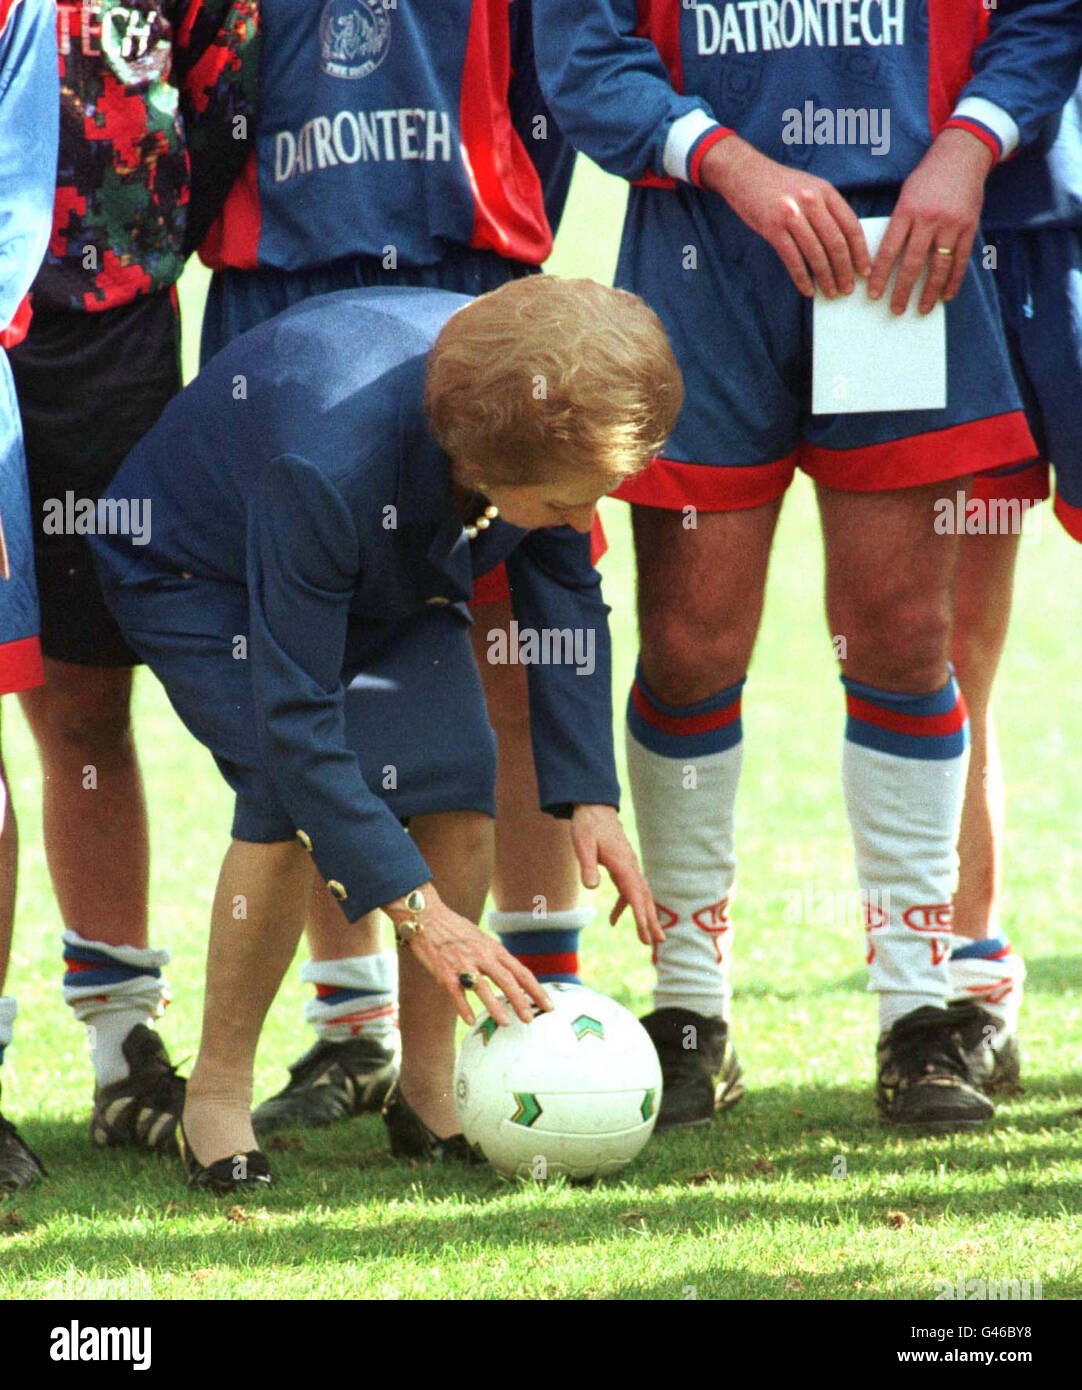 La baronne Thatcher positionne un ballon de football lors d'une séance photo avec le club de football Aldershot Today (Wed), alors qu'elle s'est lancée pour la première fois sur la piste de campagne des Tory. Voir l’histoire de l’AP ELECTION Thatcher. Photo Tim Ockenden/PA Banque D'Images